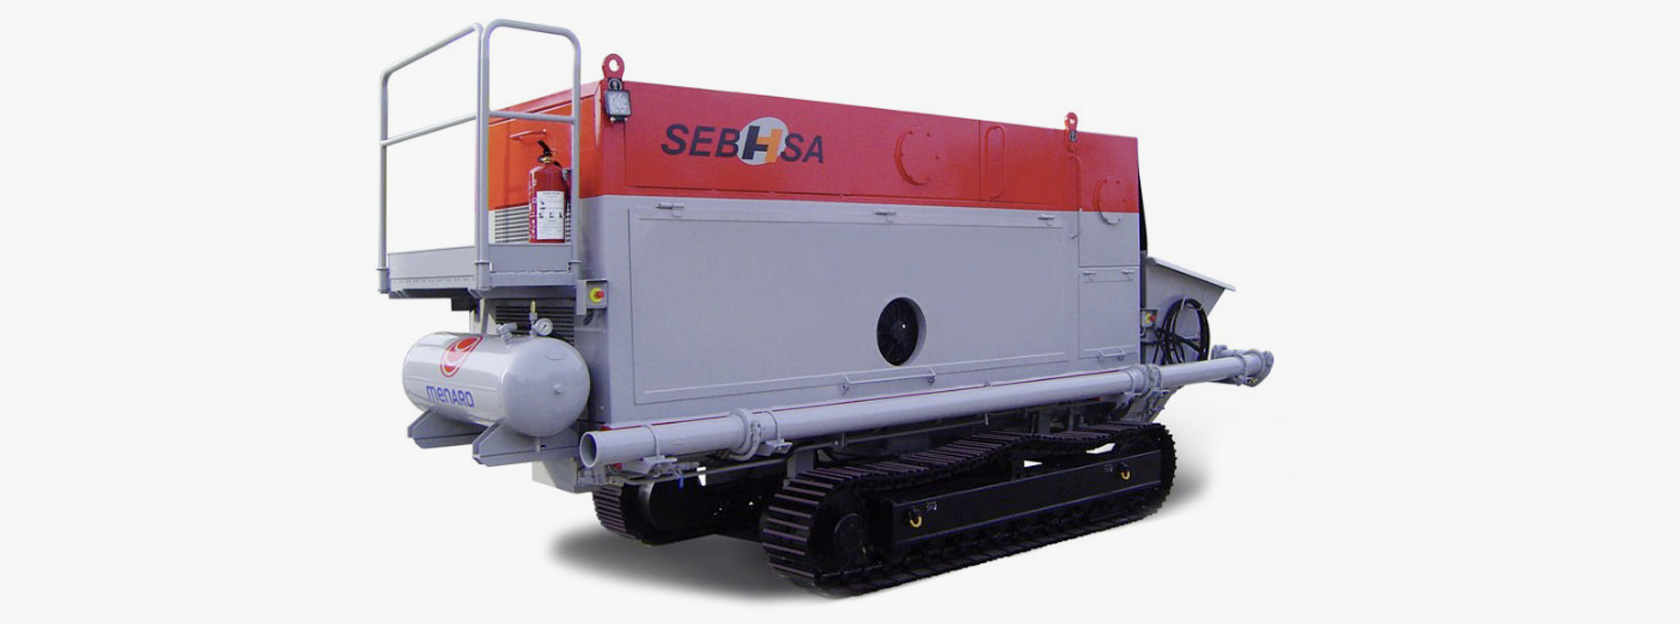 La bomba estacionaria sobre cadenas SEBHSA BD-3907.OR cumple con las más altas exigencias con su capacidad máxima de producción de hormigón.